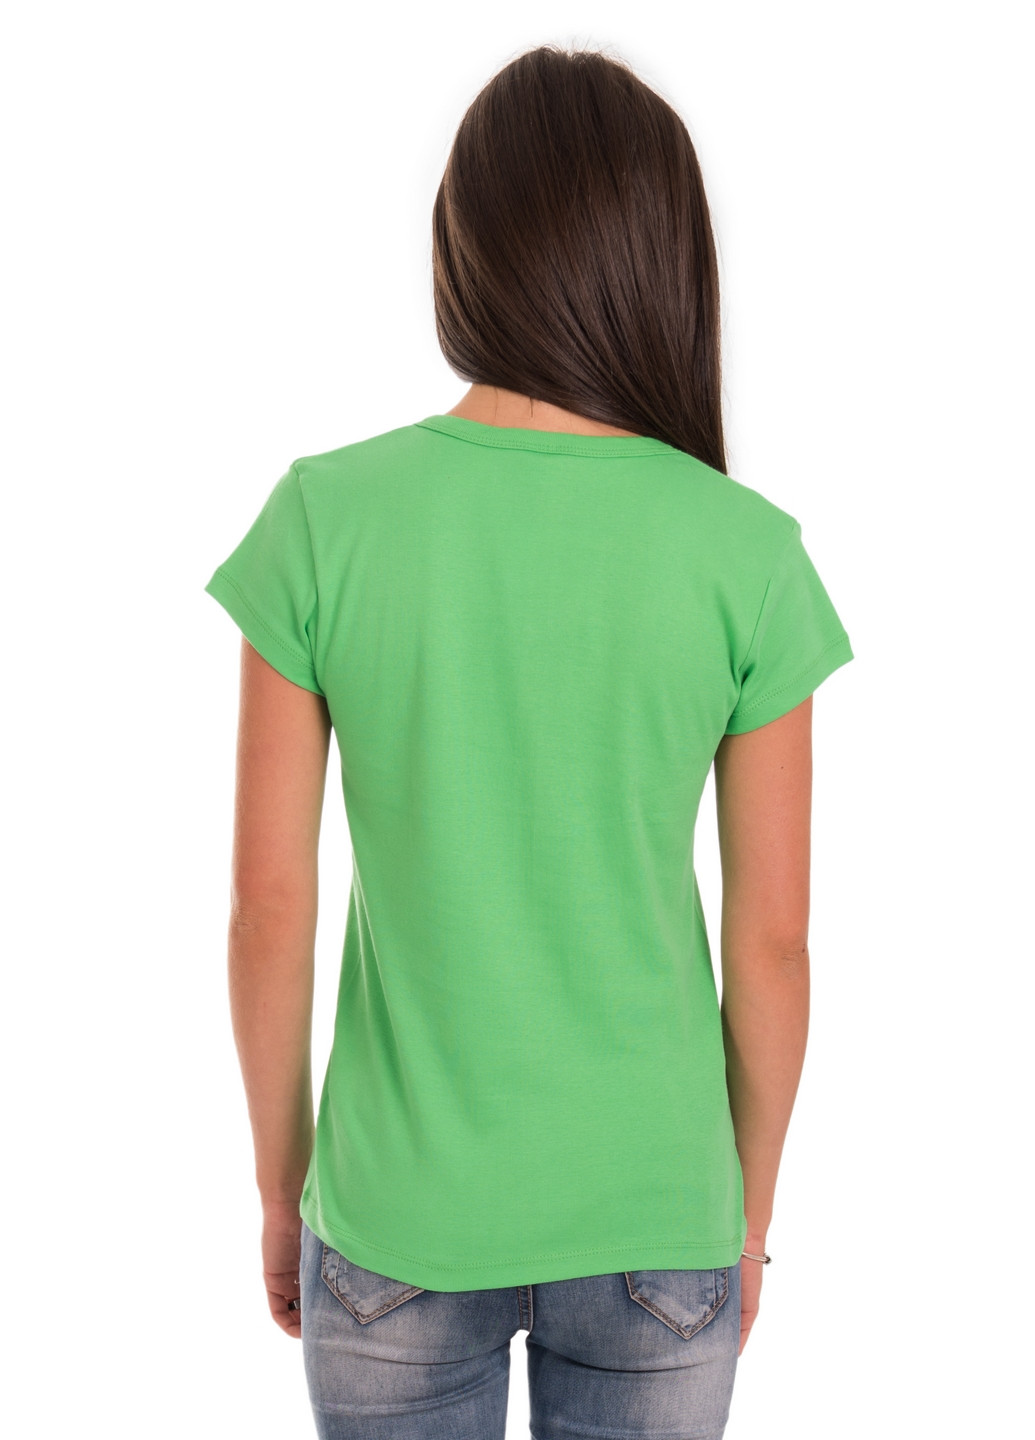 Зелена всесезон футболка жіноча Наталюкс 21-2383